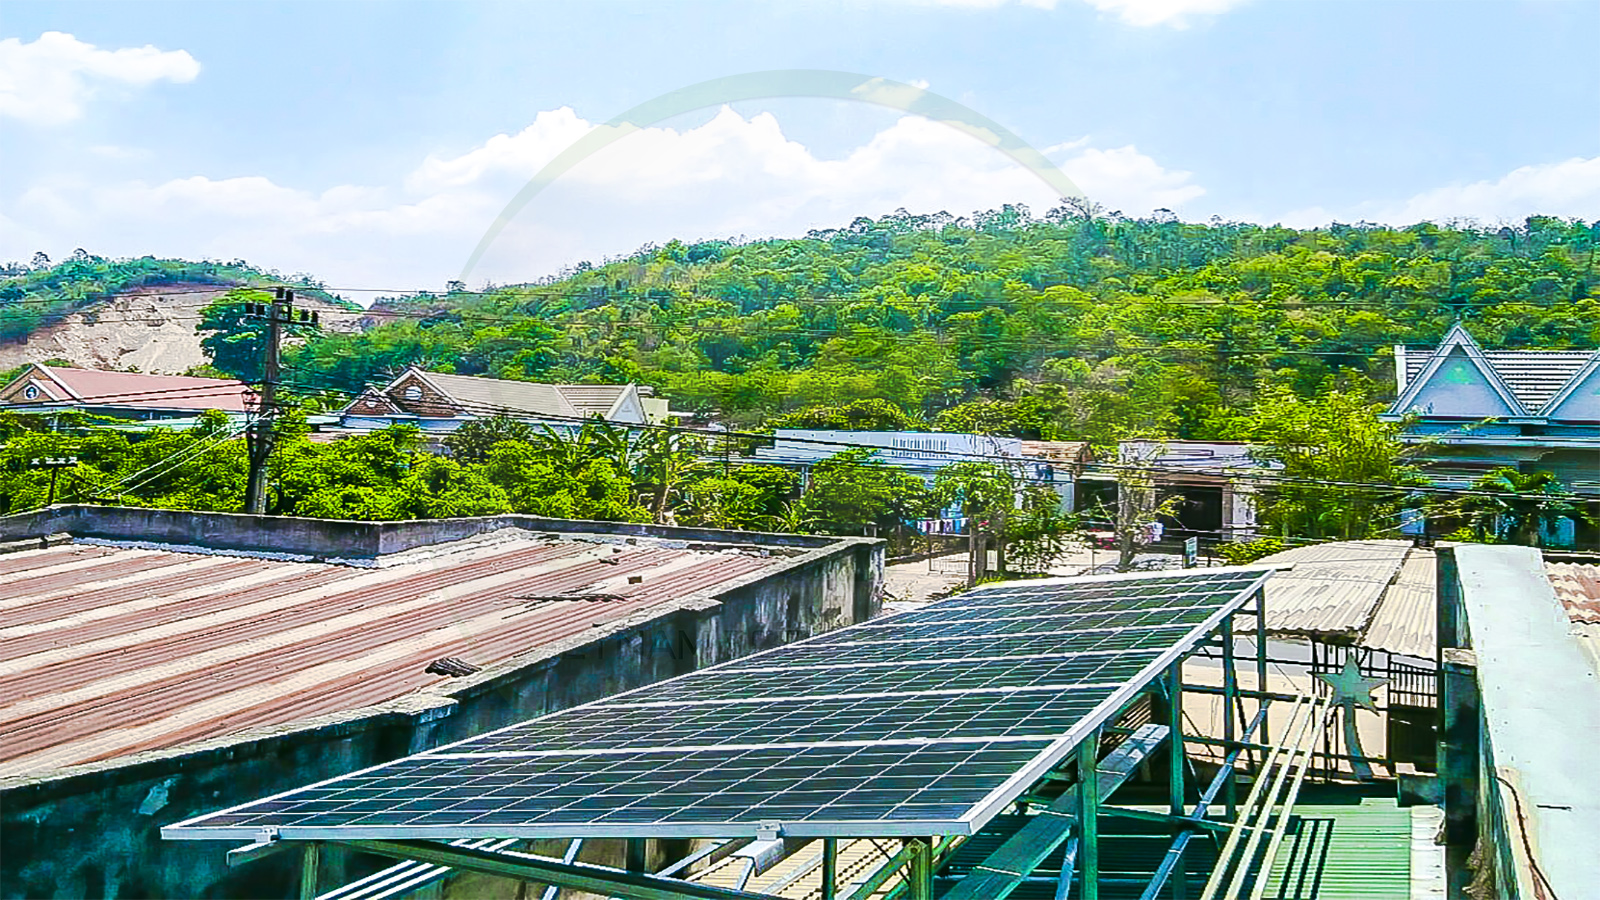 VES lắp đặt điện năng lượng mặt trời cho khách hàng anh Tùng tại Đắk Lắk